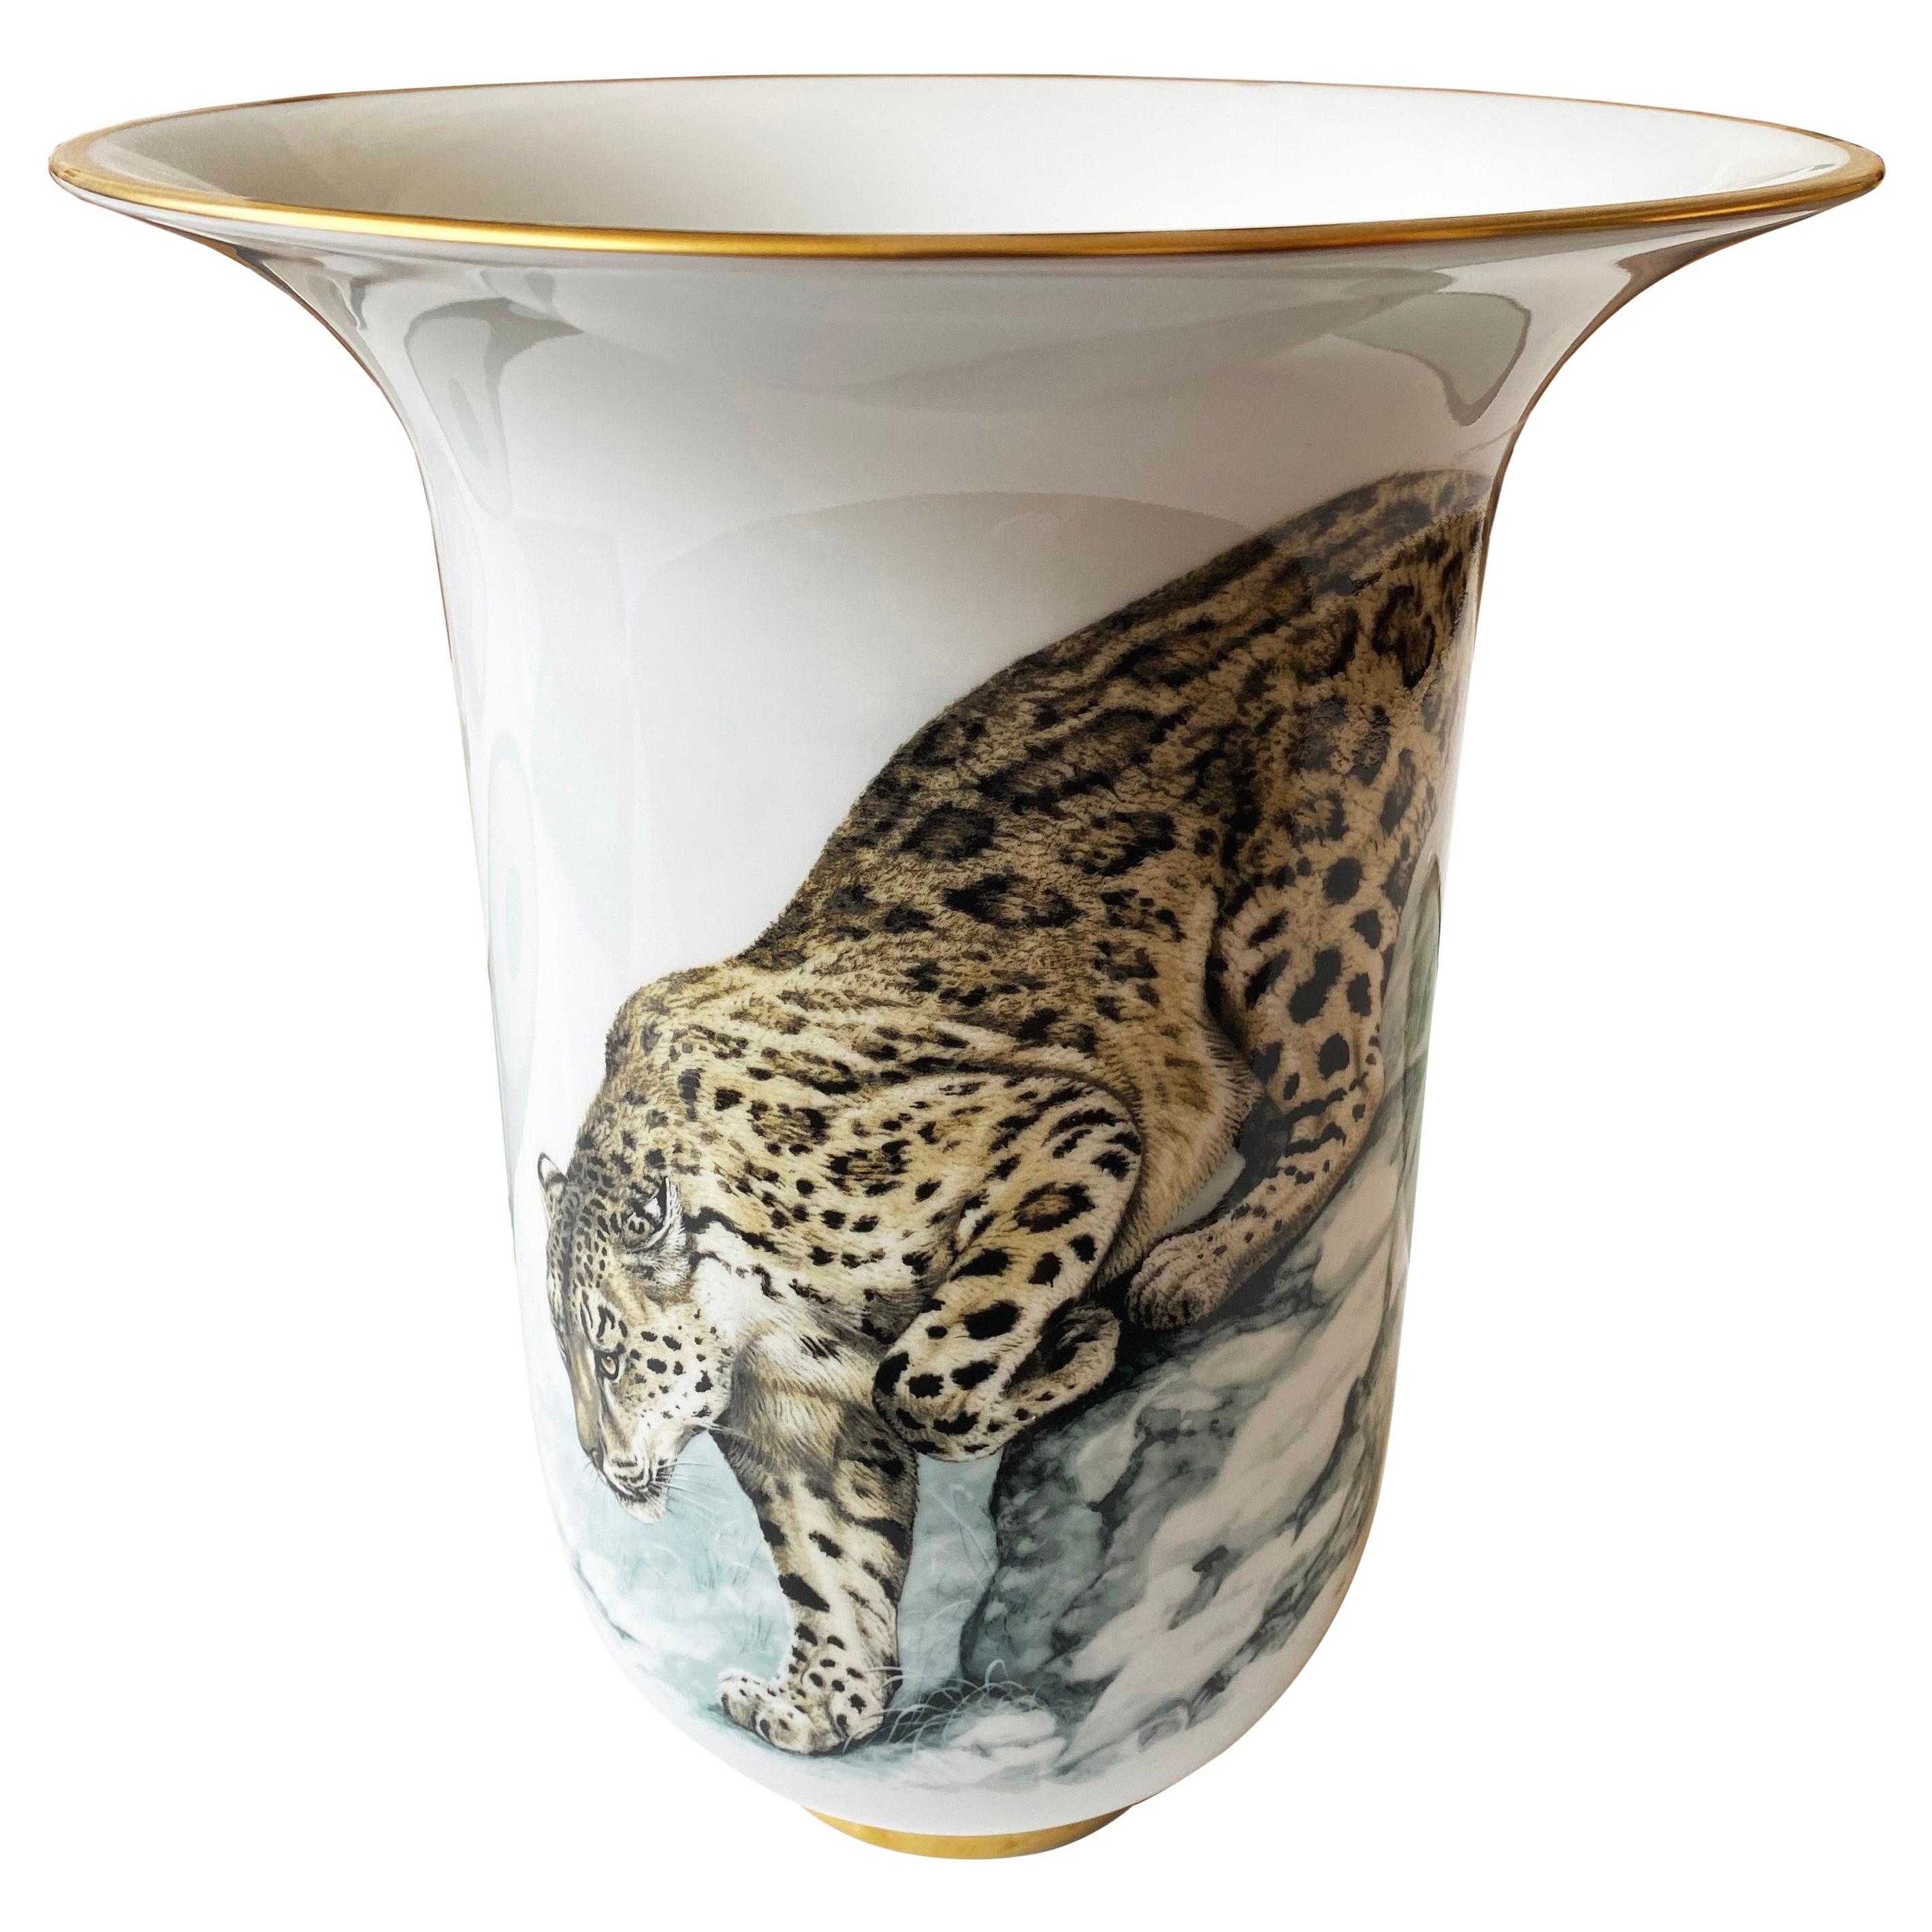 Hermes Vase - For Sale on 1stDibs | hermes vases, hermes vase price, hermes  flower vase